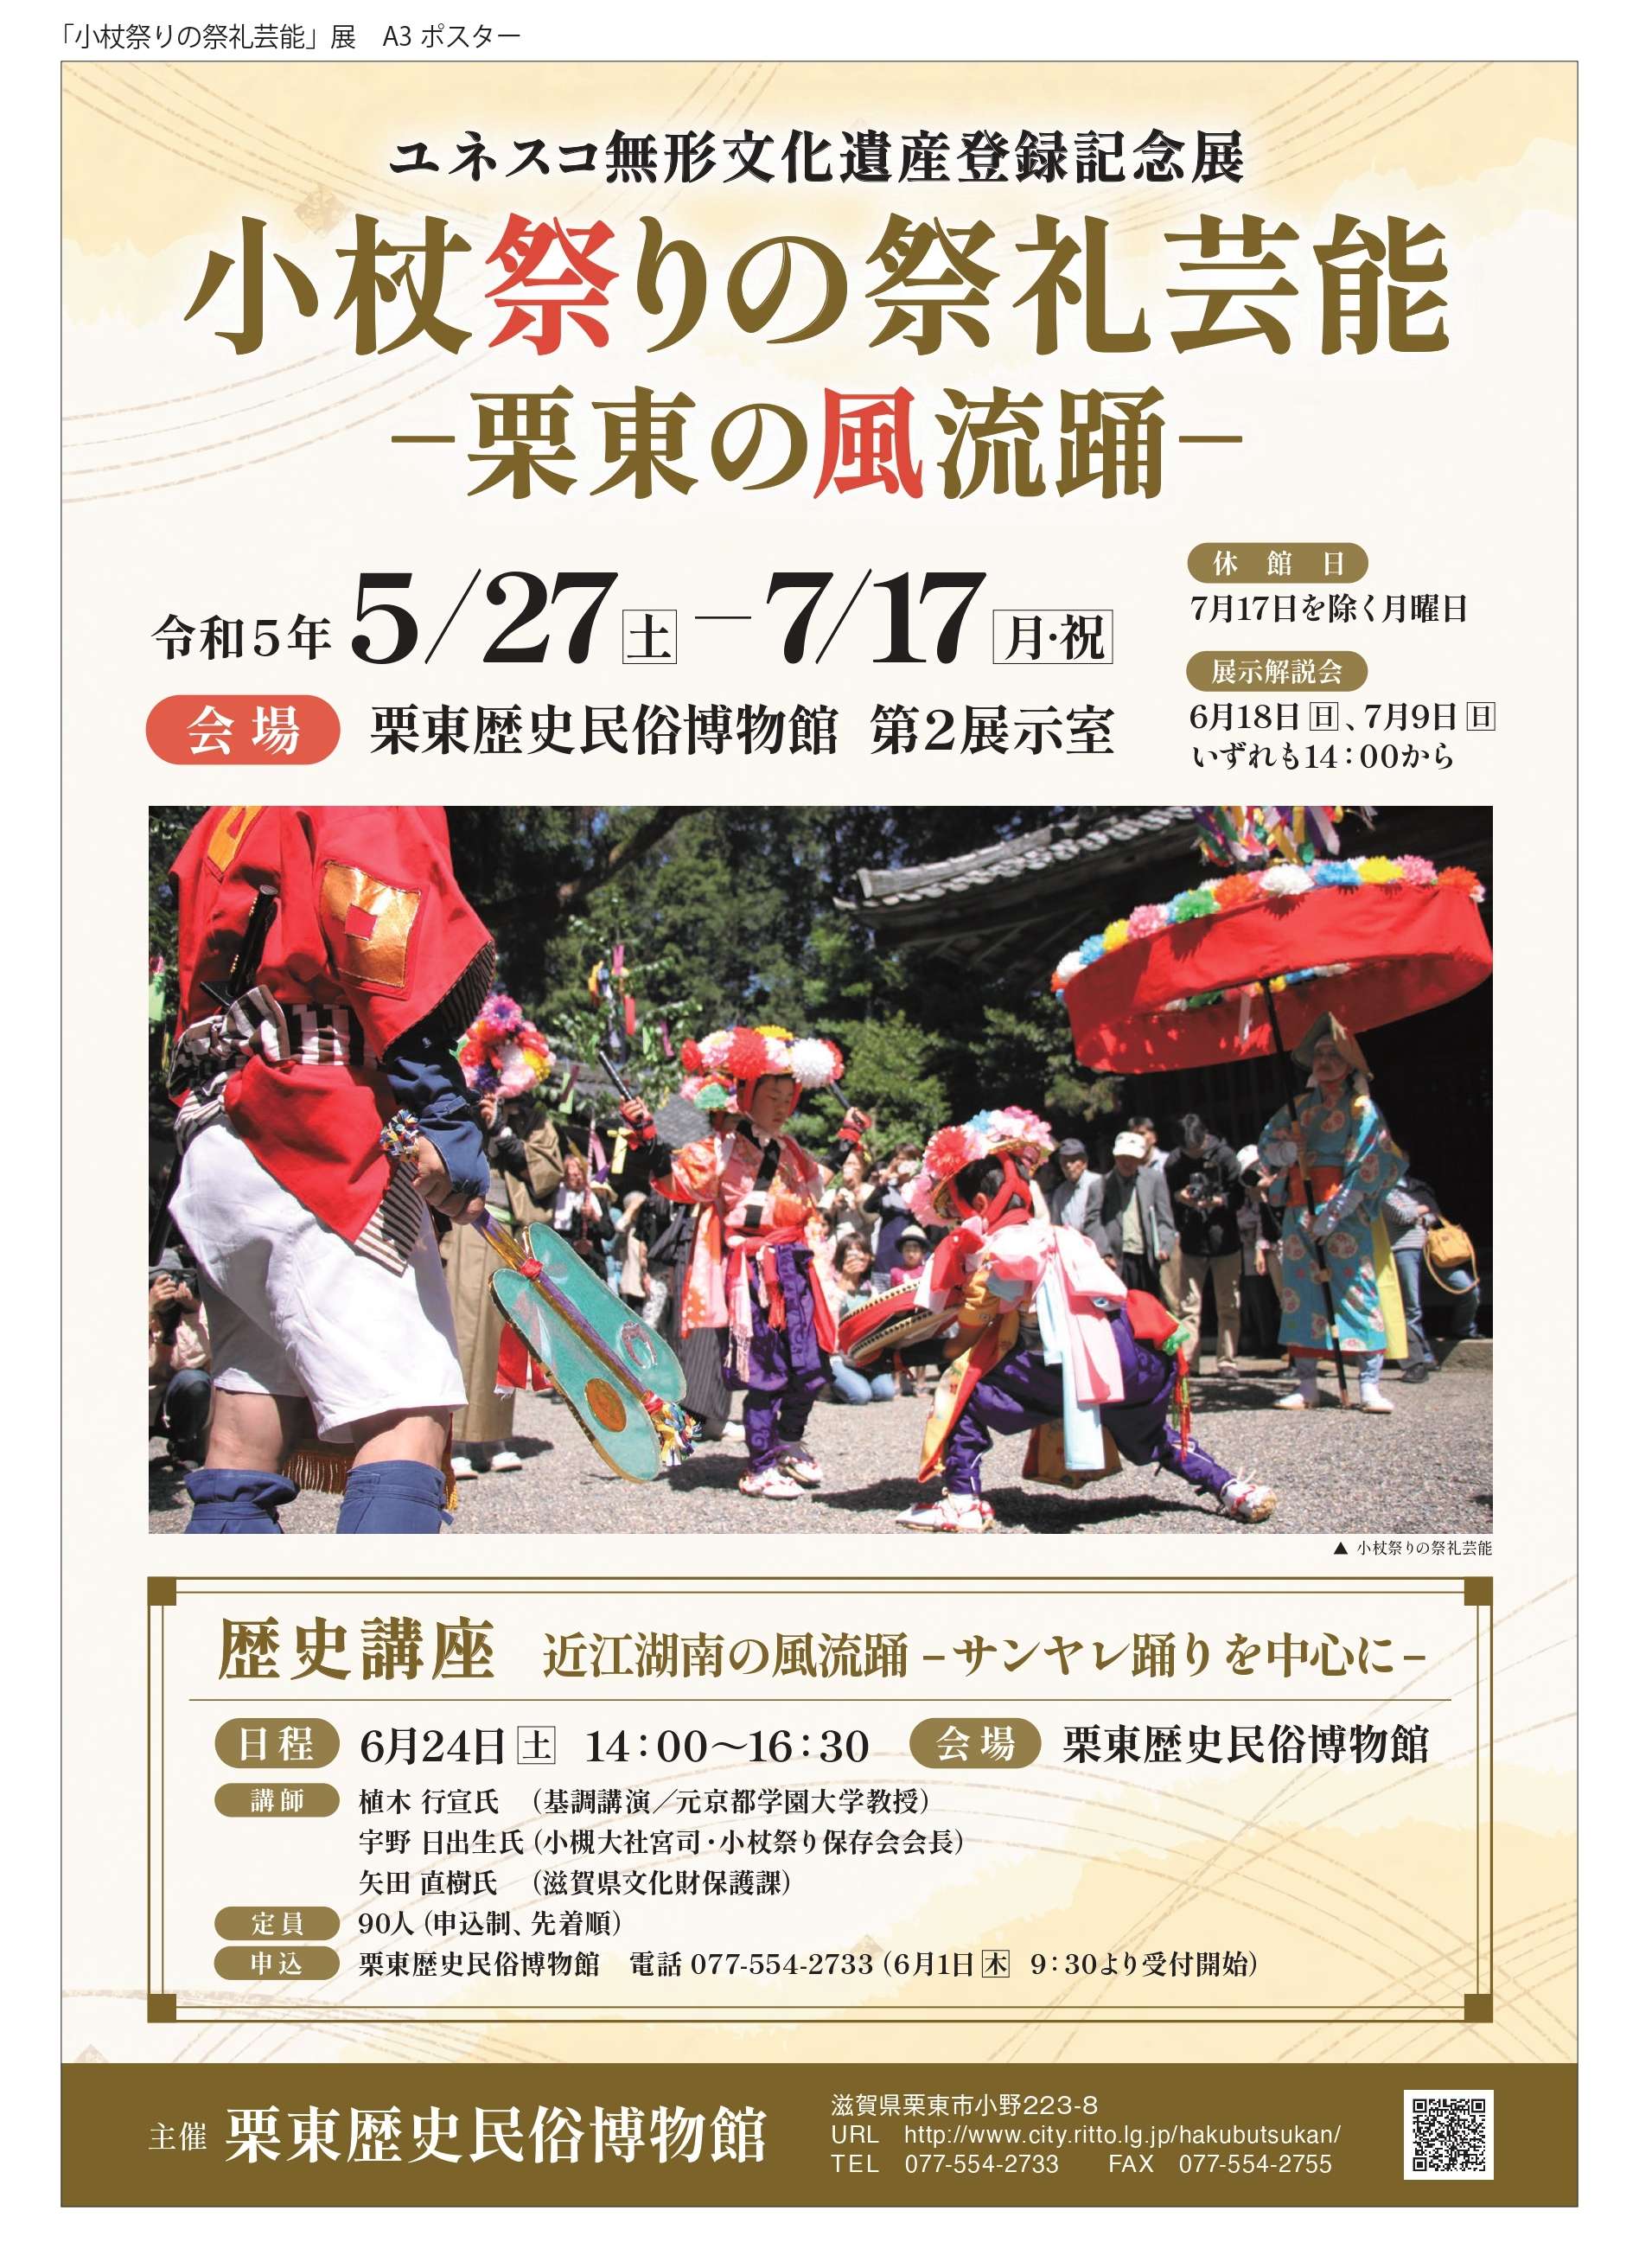 ユネスコ無形文化遺産登録記念展「小杖祭りの祭礼芸能―栗東の風流踊―」（5月27日土曜日から7月17日月曜日・祝日まで）